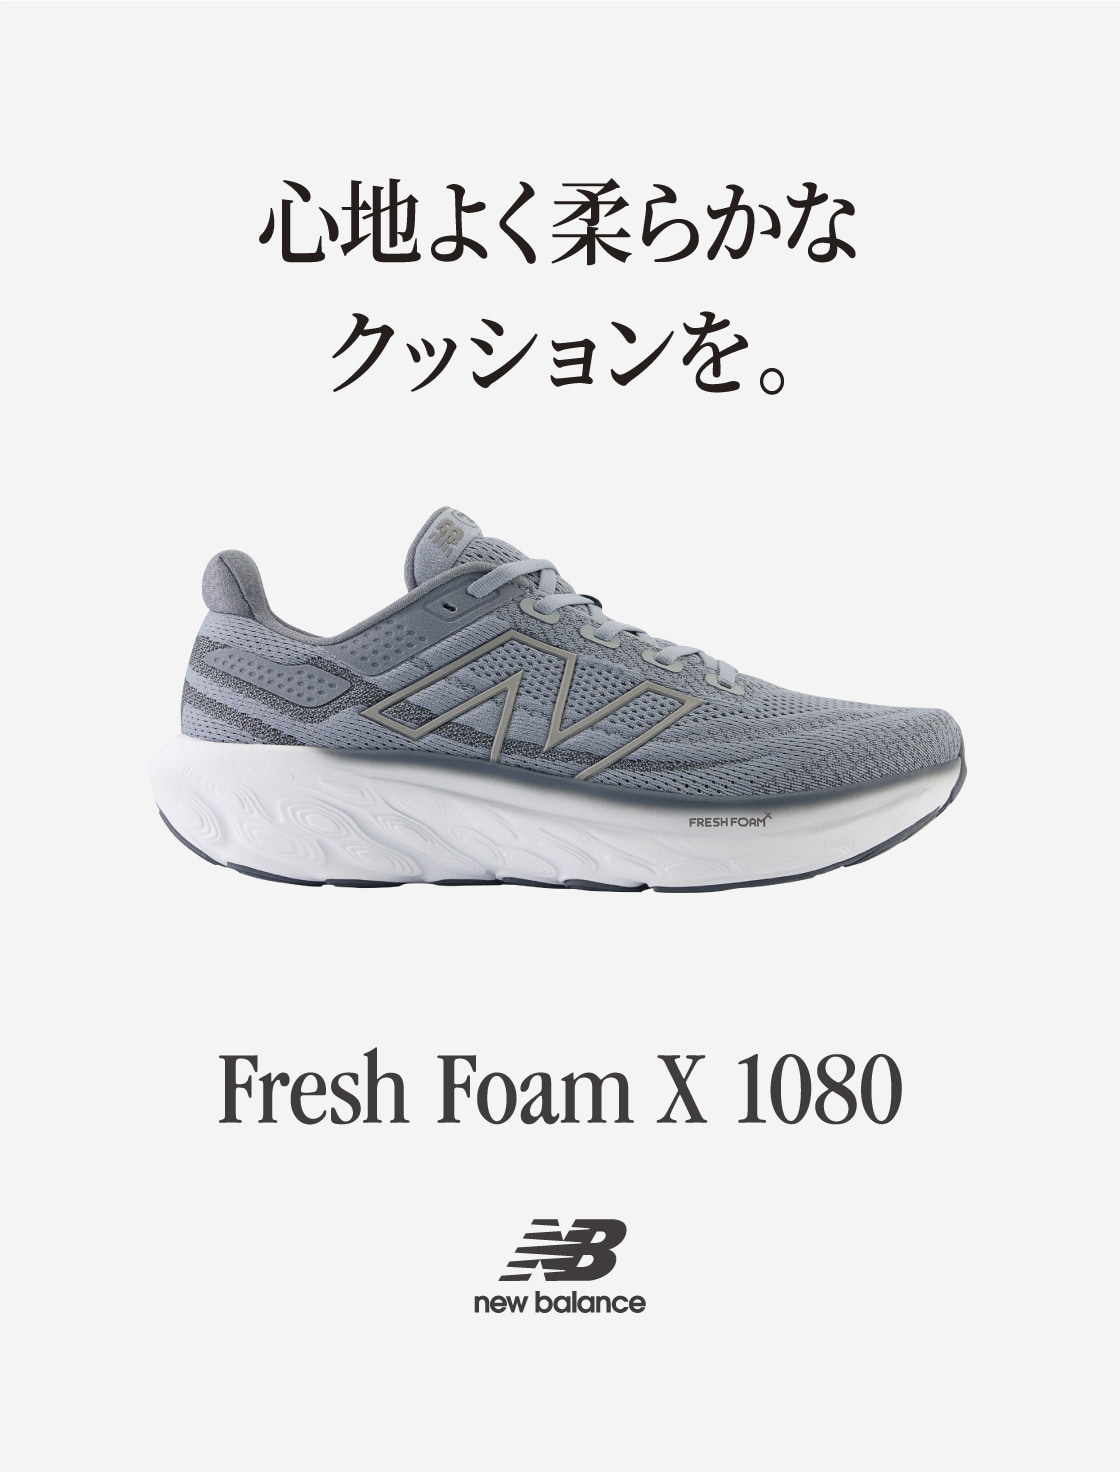 心地よく柔らかなクッションを。Fresh Foam X 1080 New Balance